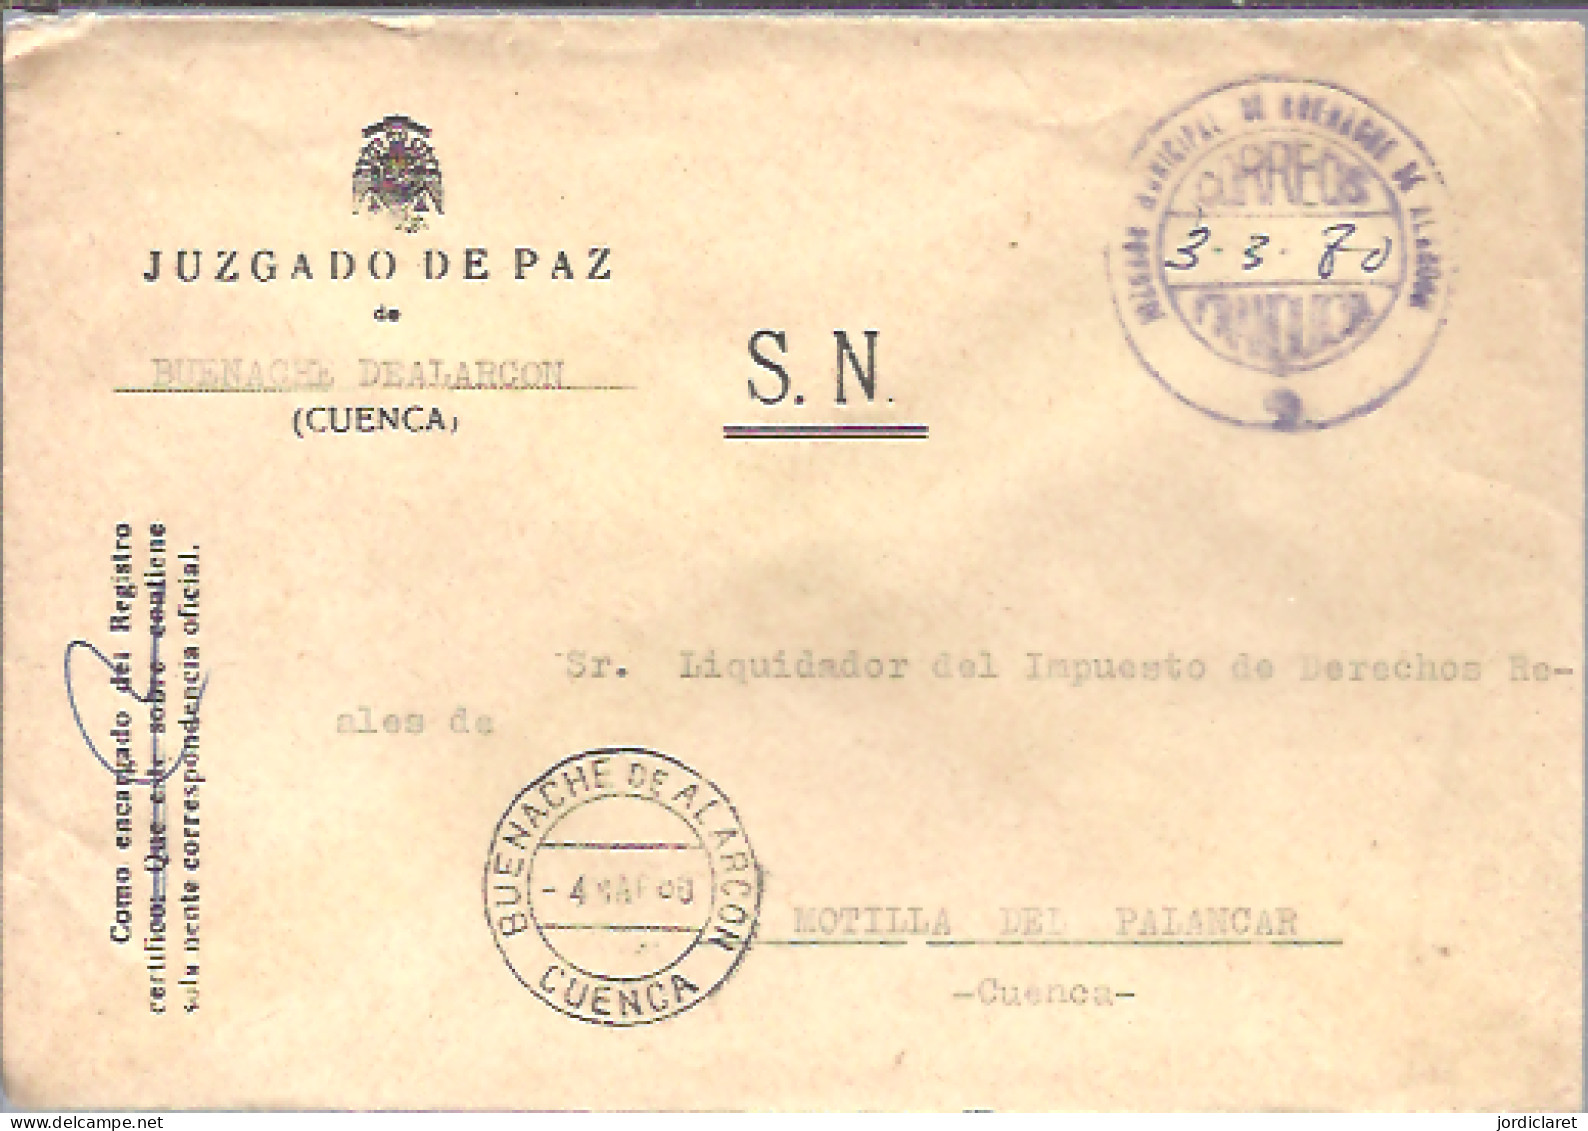 JUZGADO DE PAZ BUENACHE DEALARCON CUENCA 1980 - Postage Free